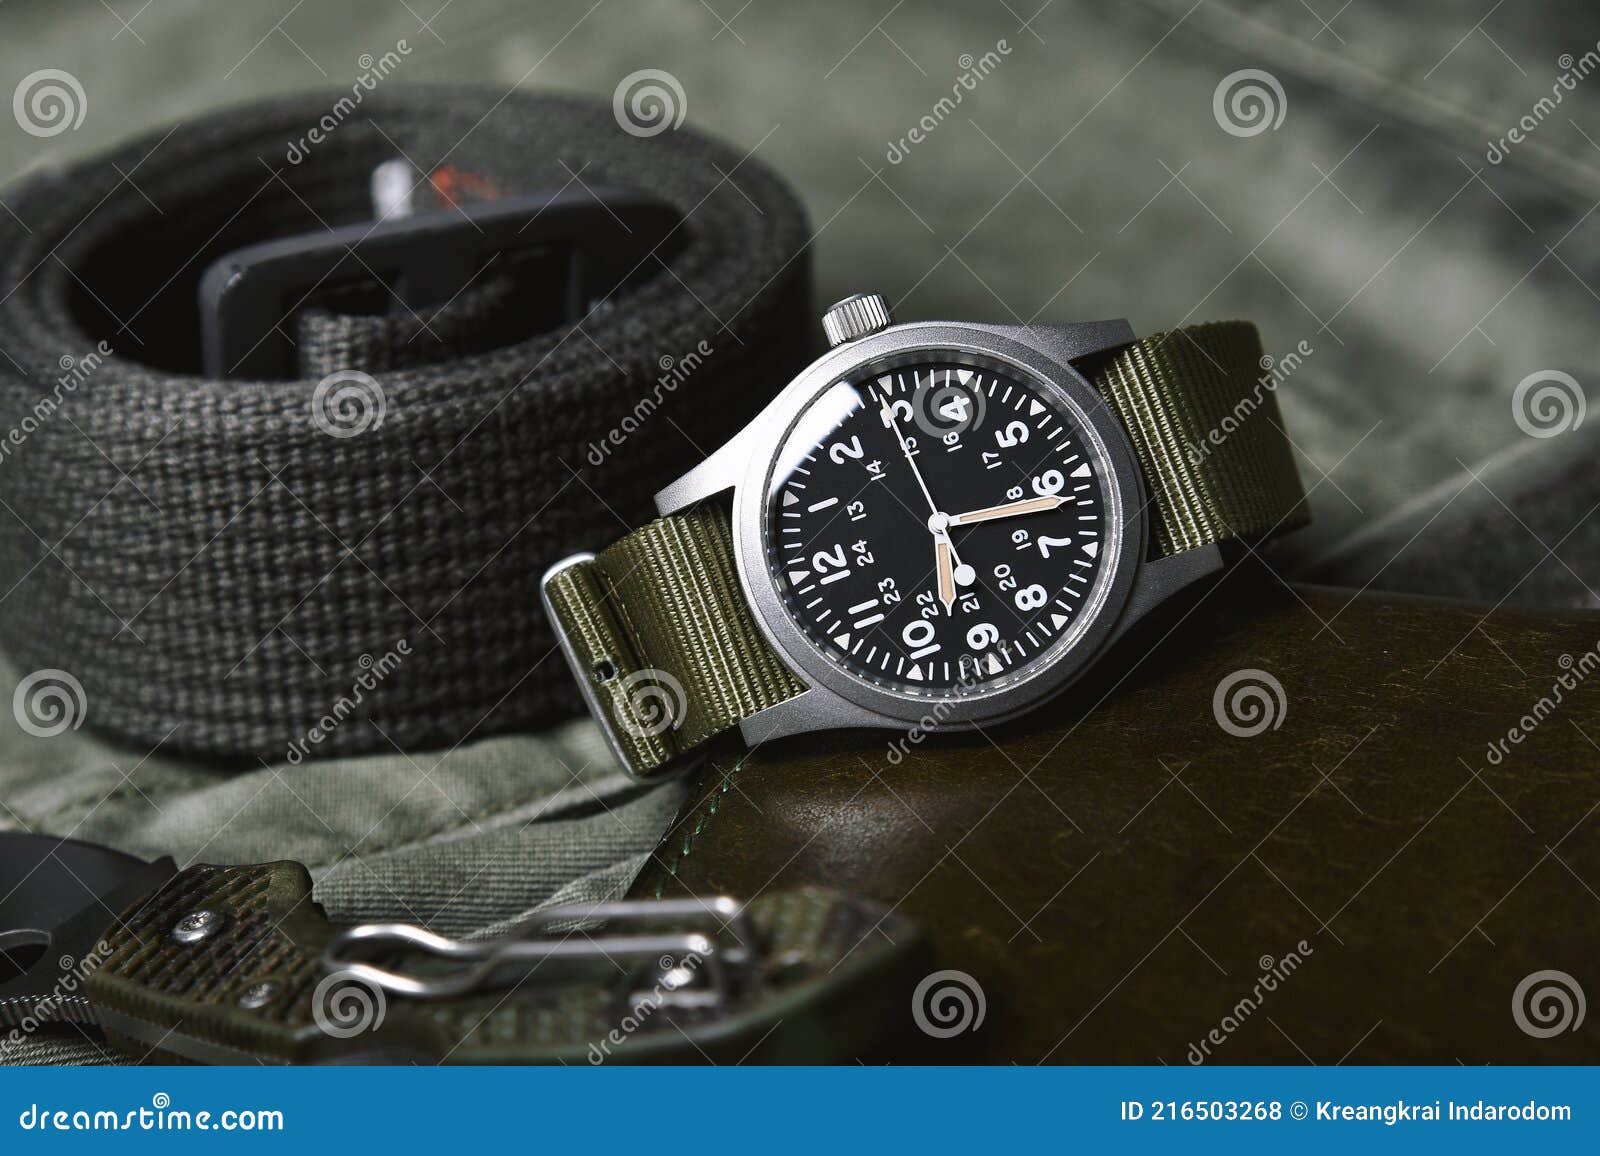 Scout | Reloj militar Nato verde